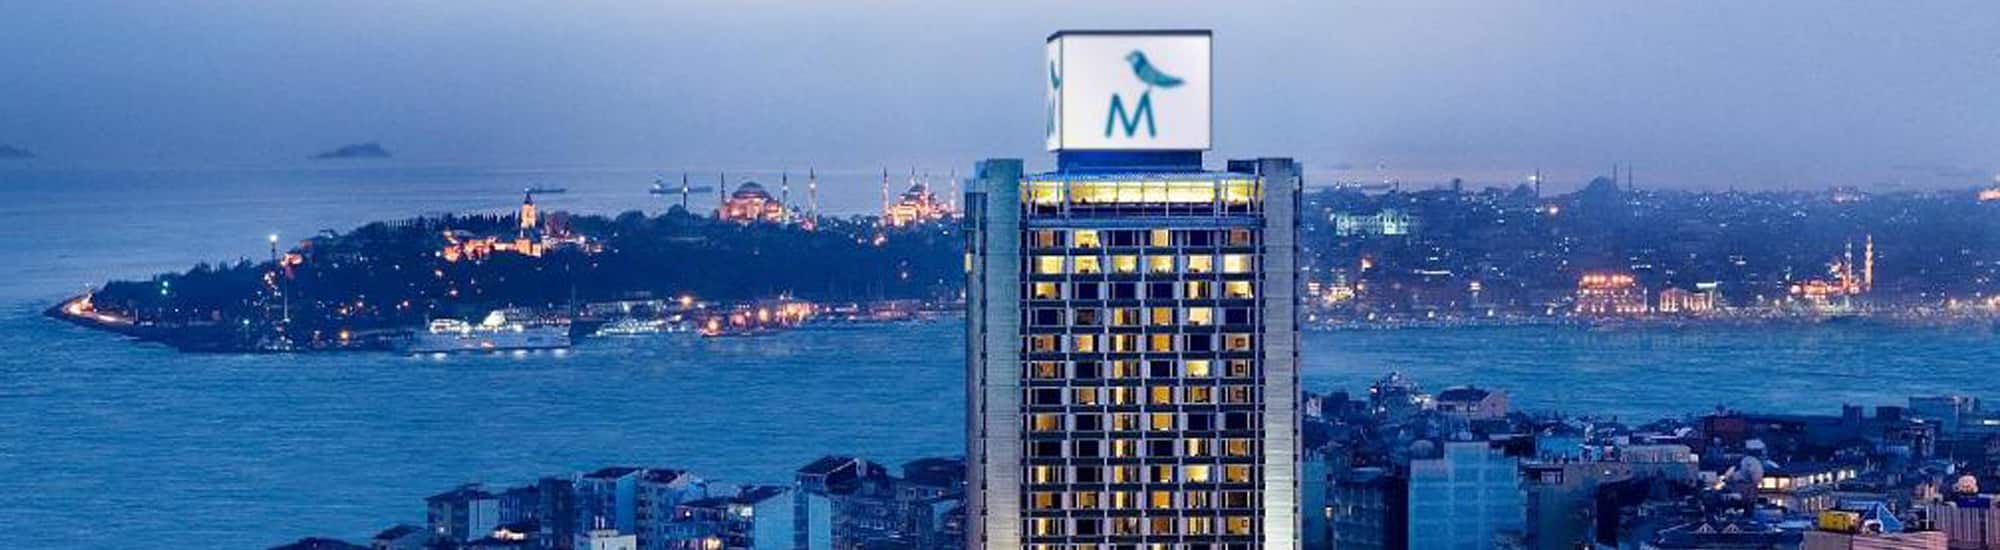 هتل مارمارا تکسیم در استانبول